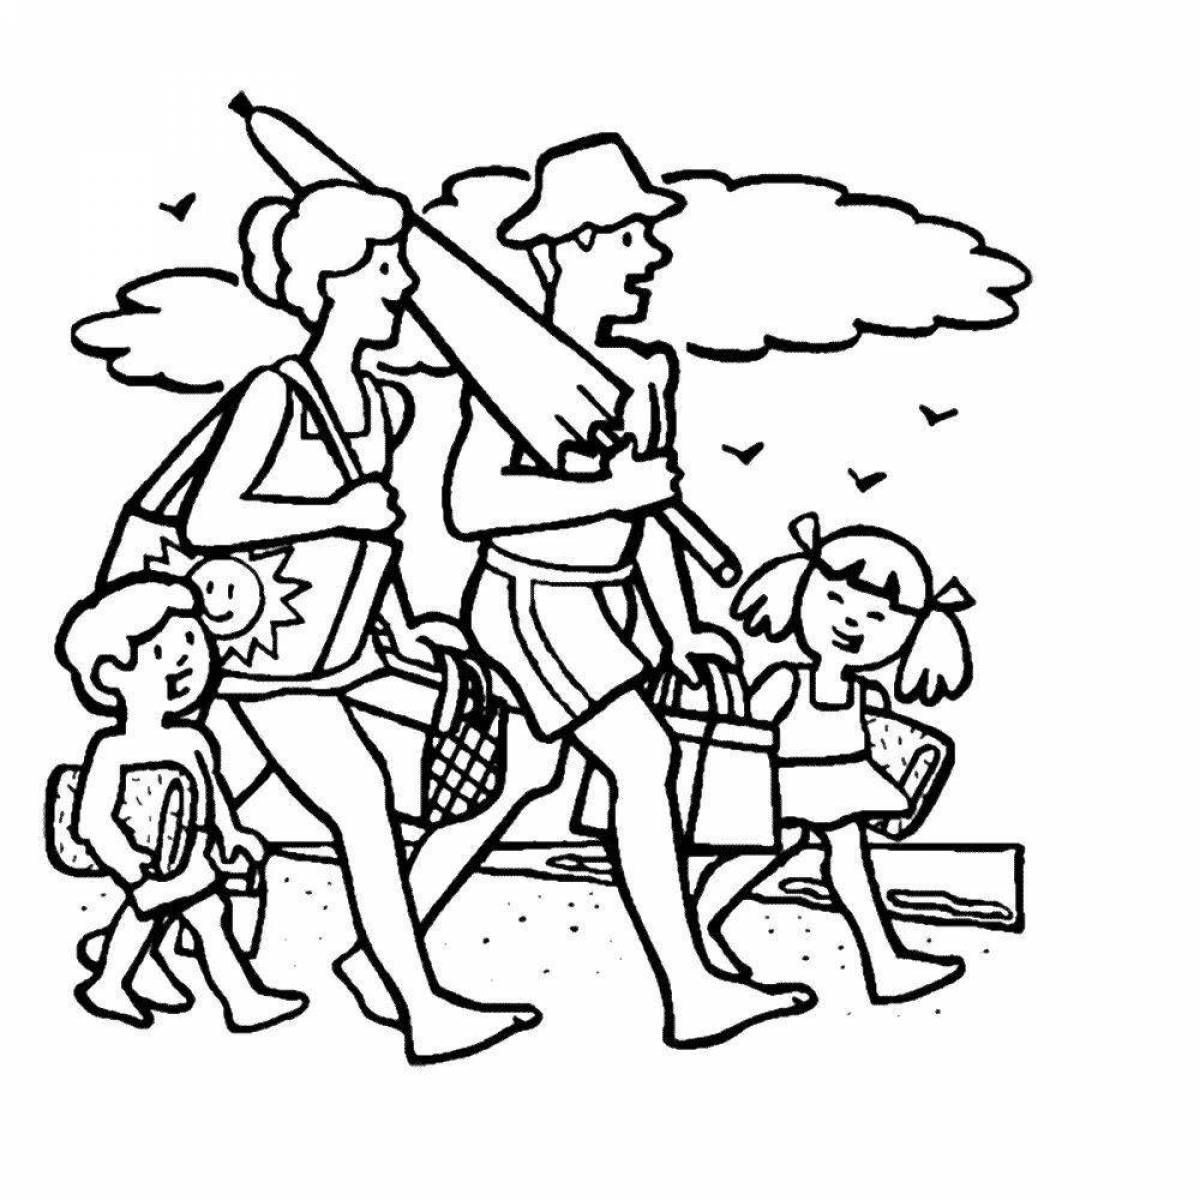 Brilliant family in the sea coloring book